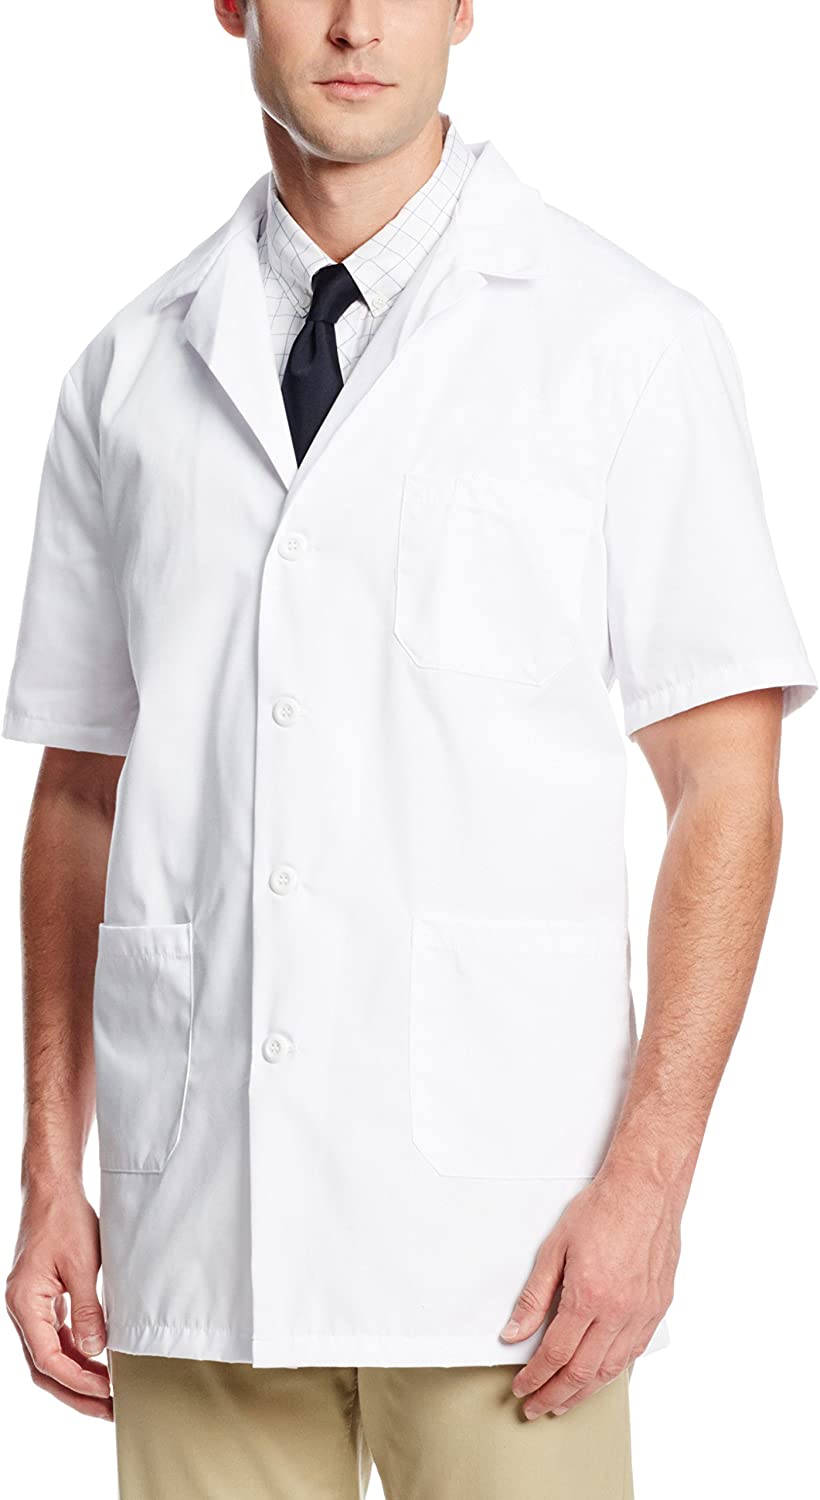 Laboratory Coat - Short Sleeve, Male & Female